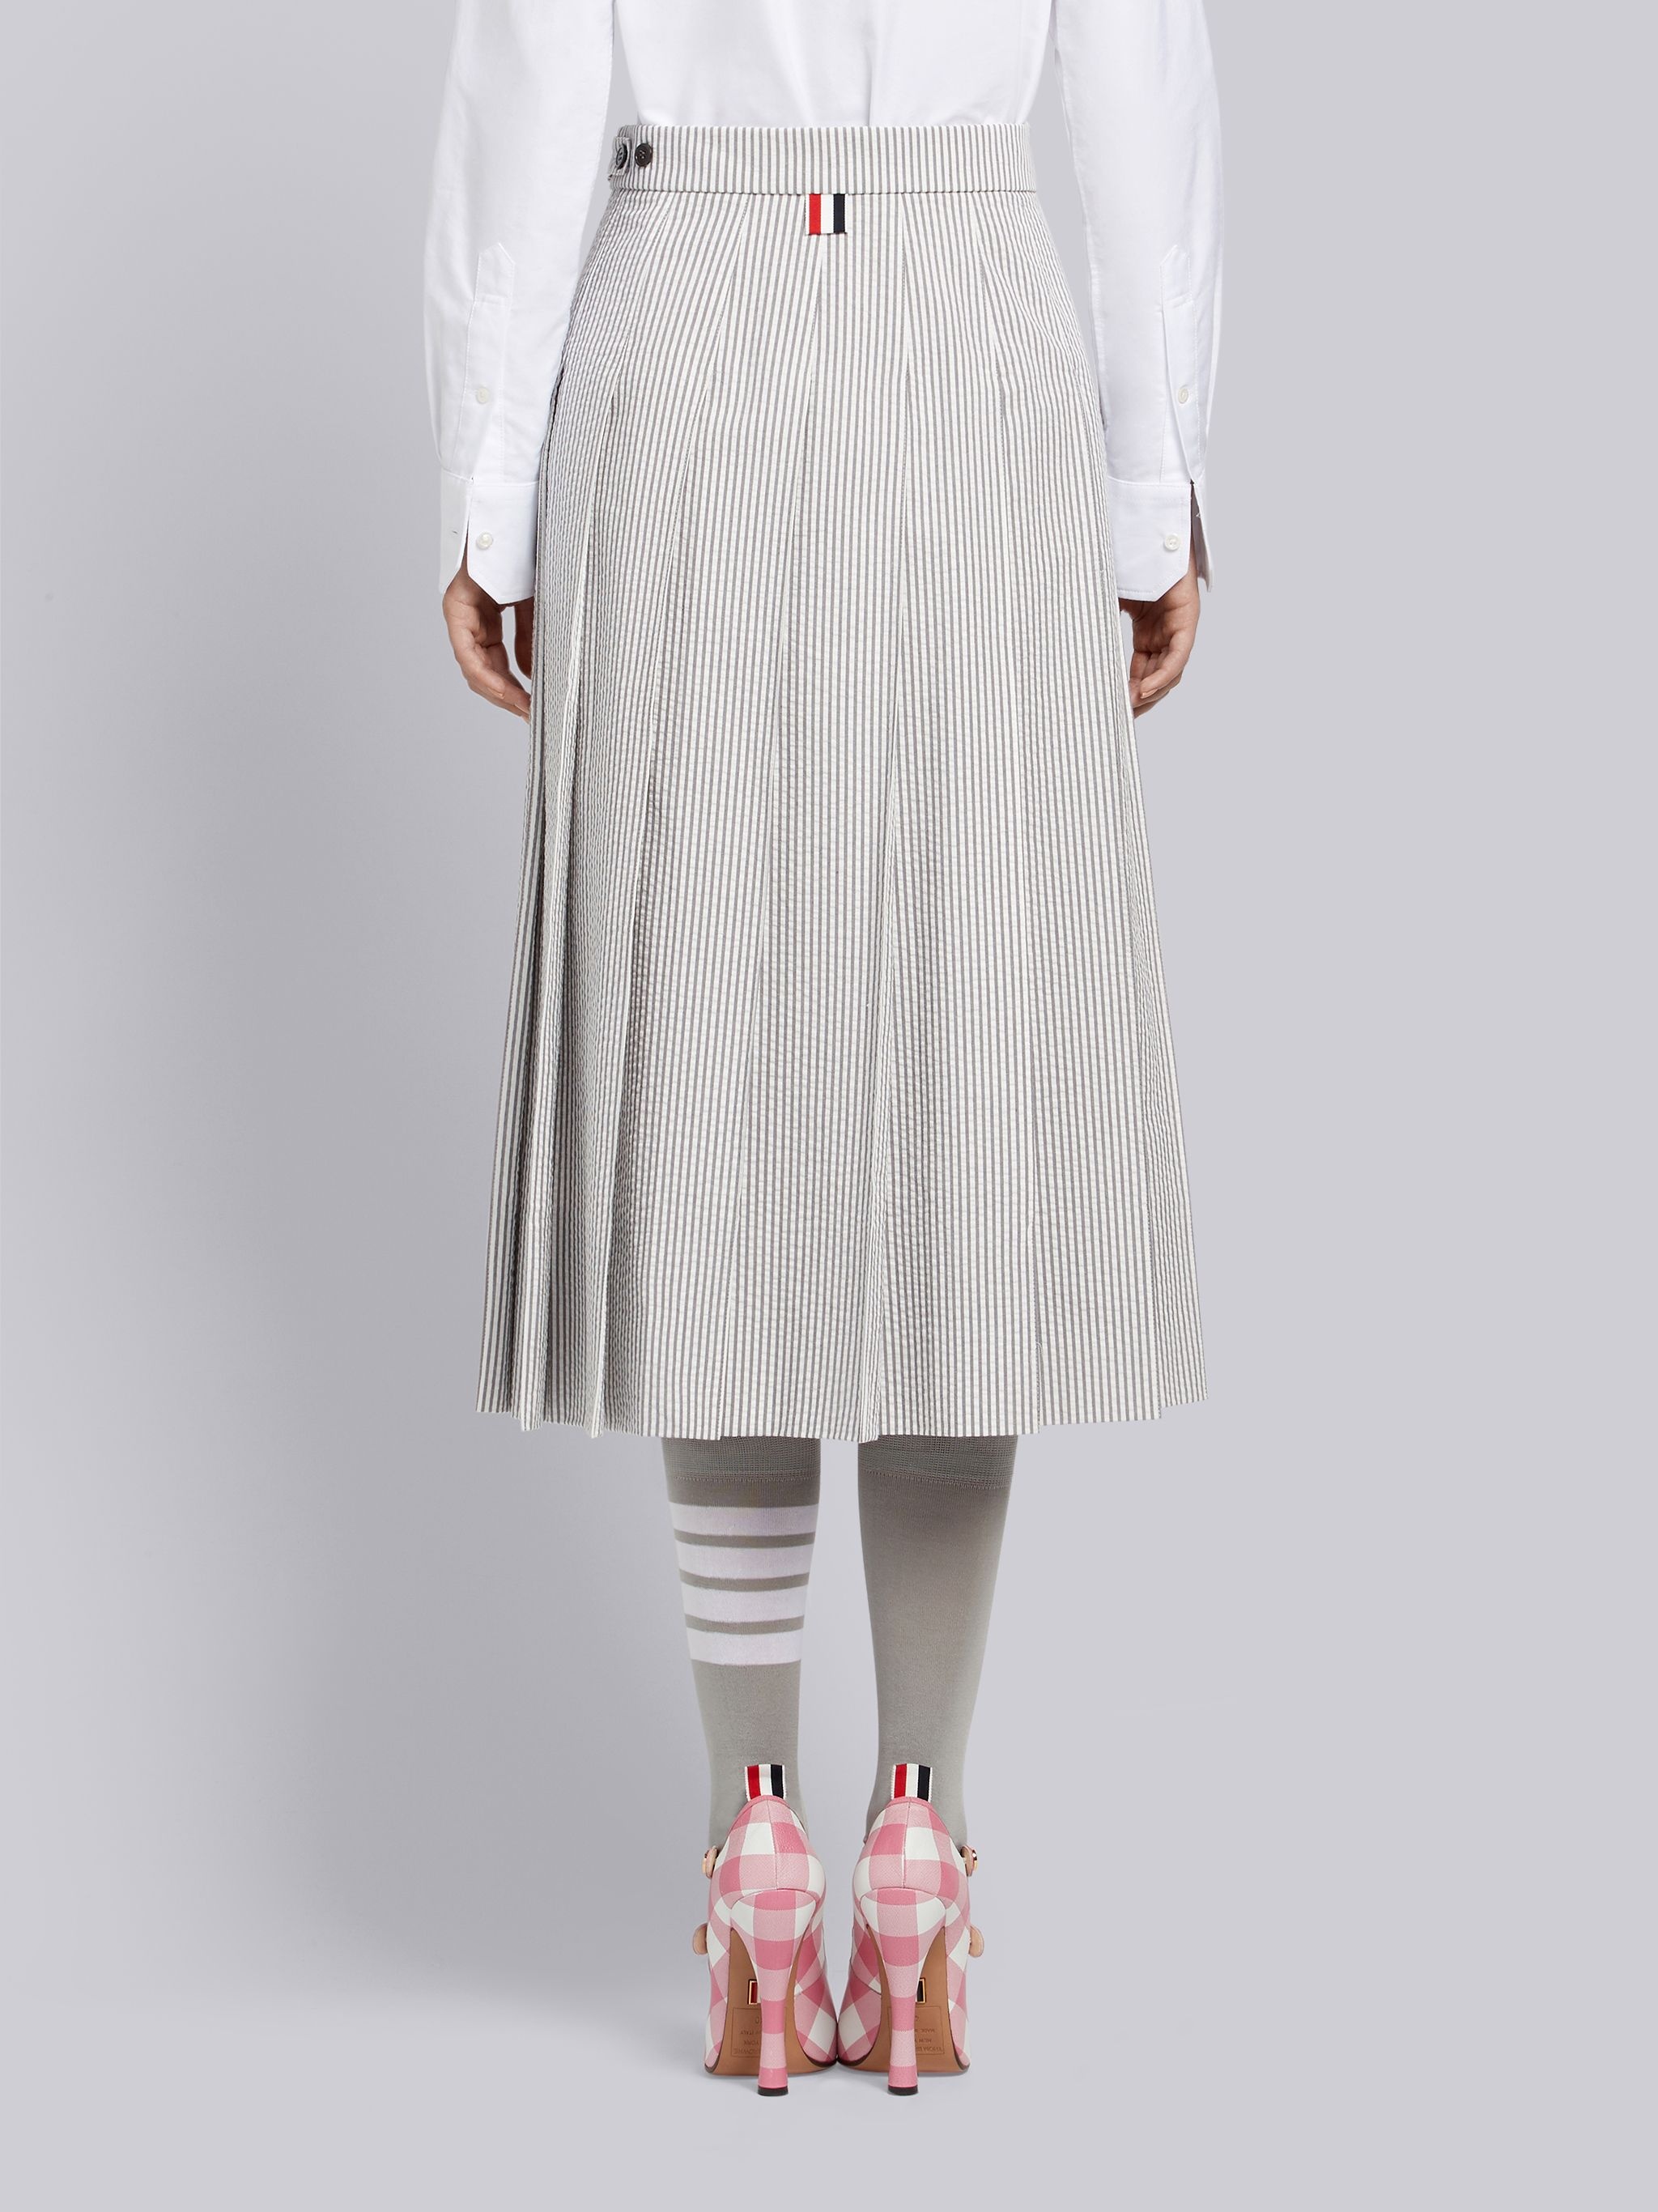 Medium Grey Seersucker Below-the-knee Pleated Skirt - 3